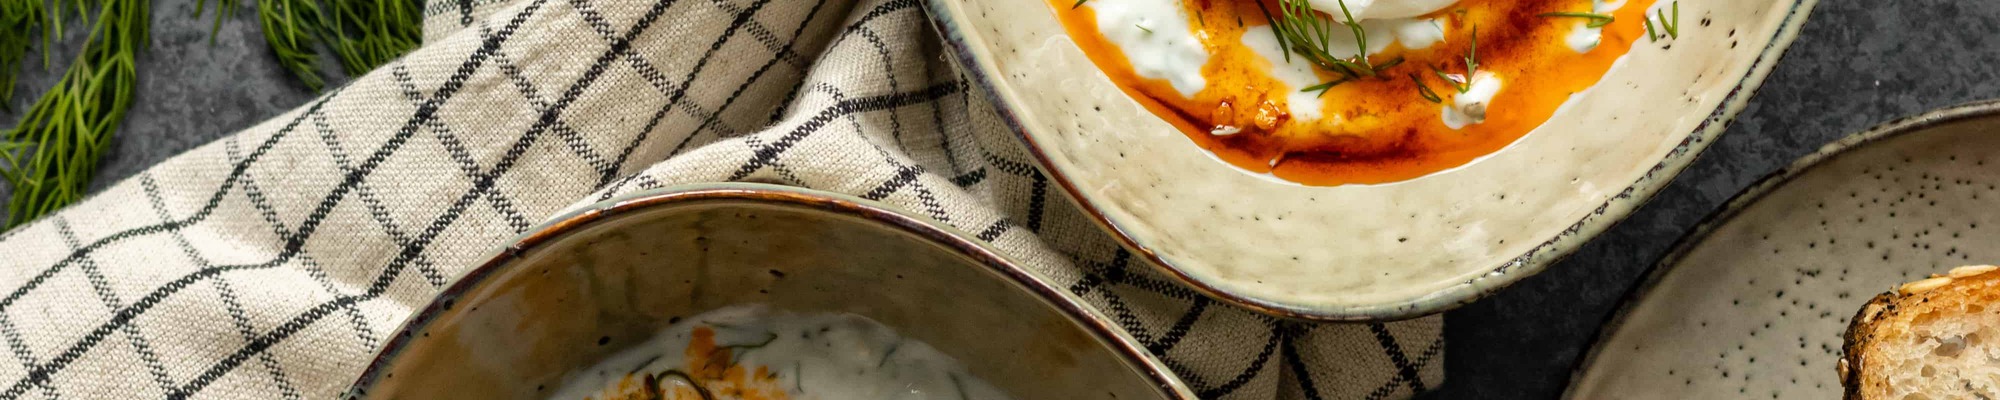 Turecké vajcia ako veľmi jednoduché a chutné raňajky či veľkolepý brunch (Recept)